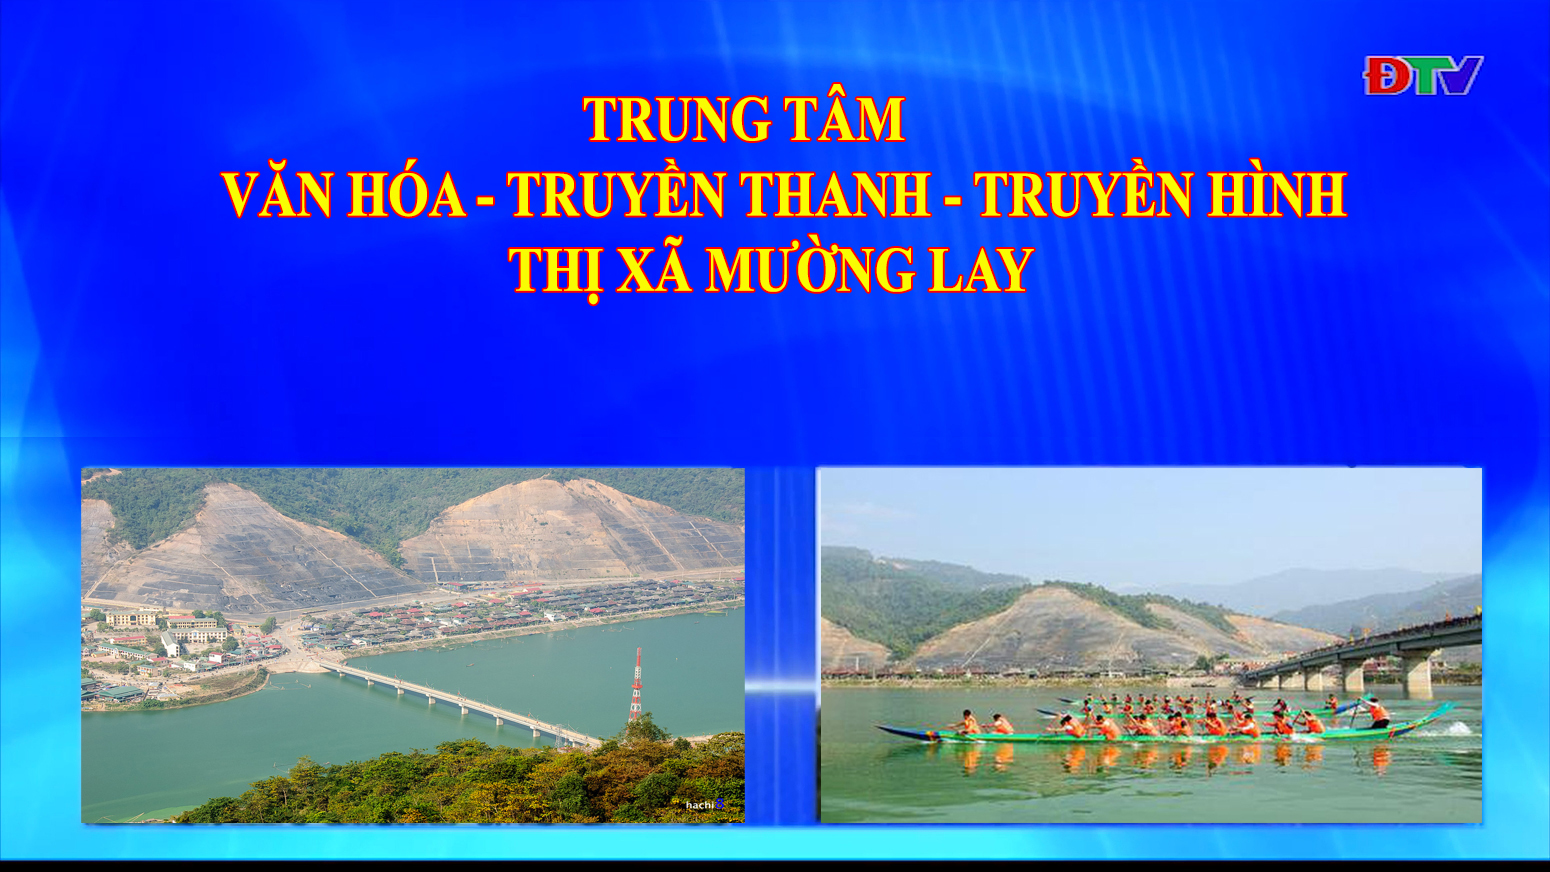 Trung tâm VH-TTTH thị xã Mường Lay (Ngày 2-10-2020)